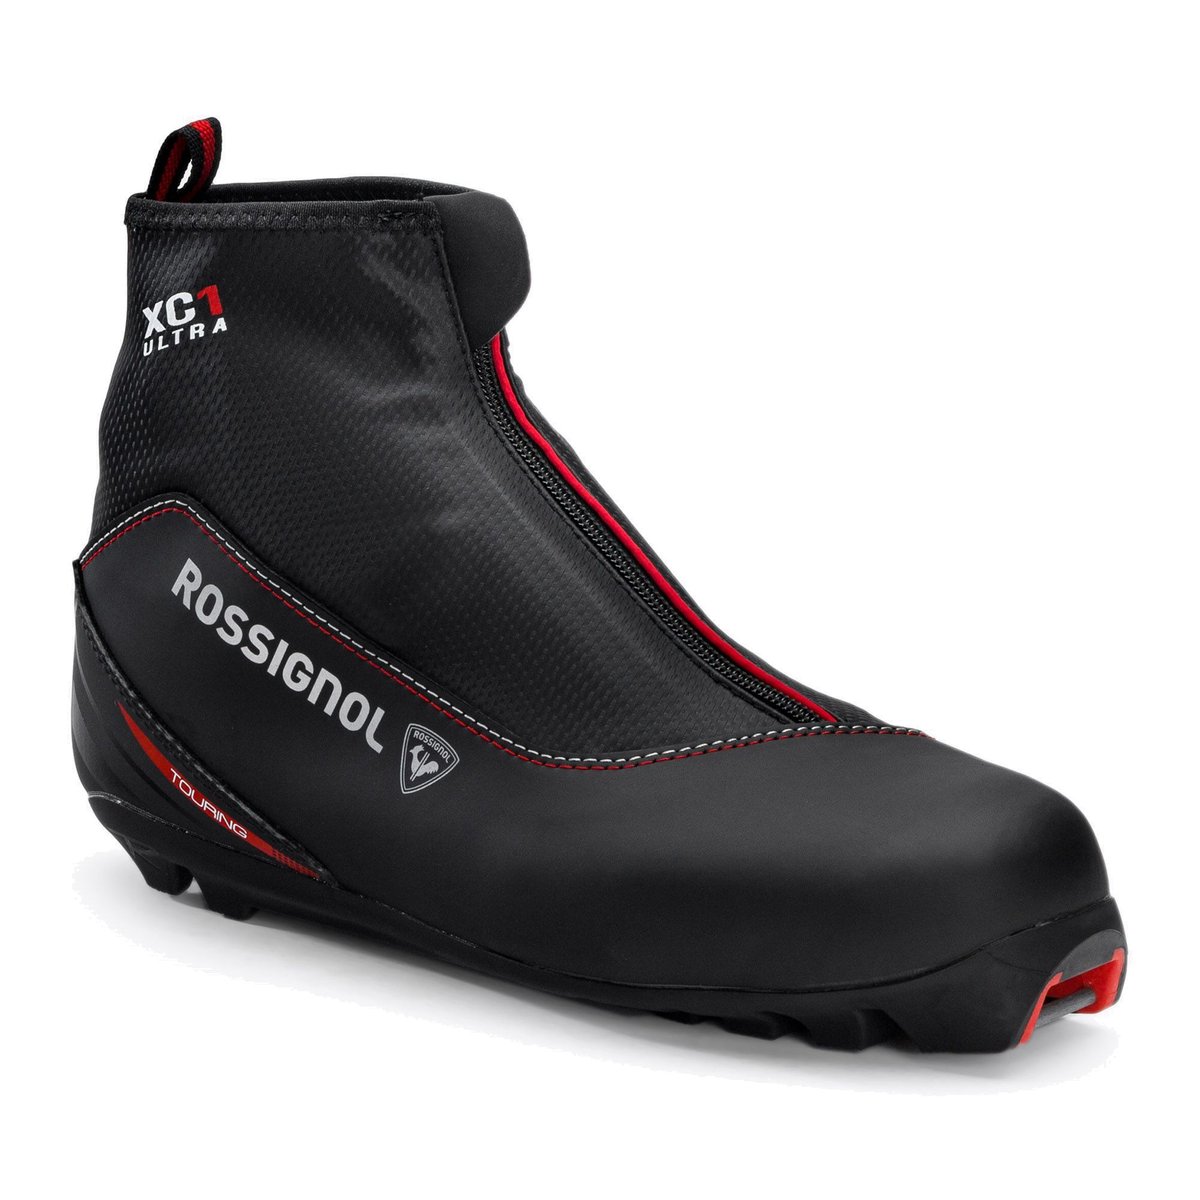 Buty do nart biegowych męskie Rossignol X-1 Ultra czarne RIJW080  41 eu